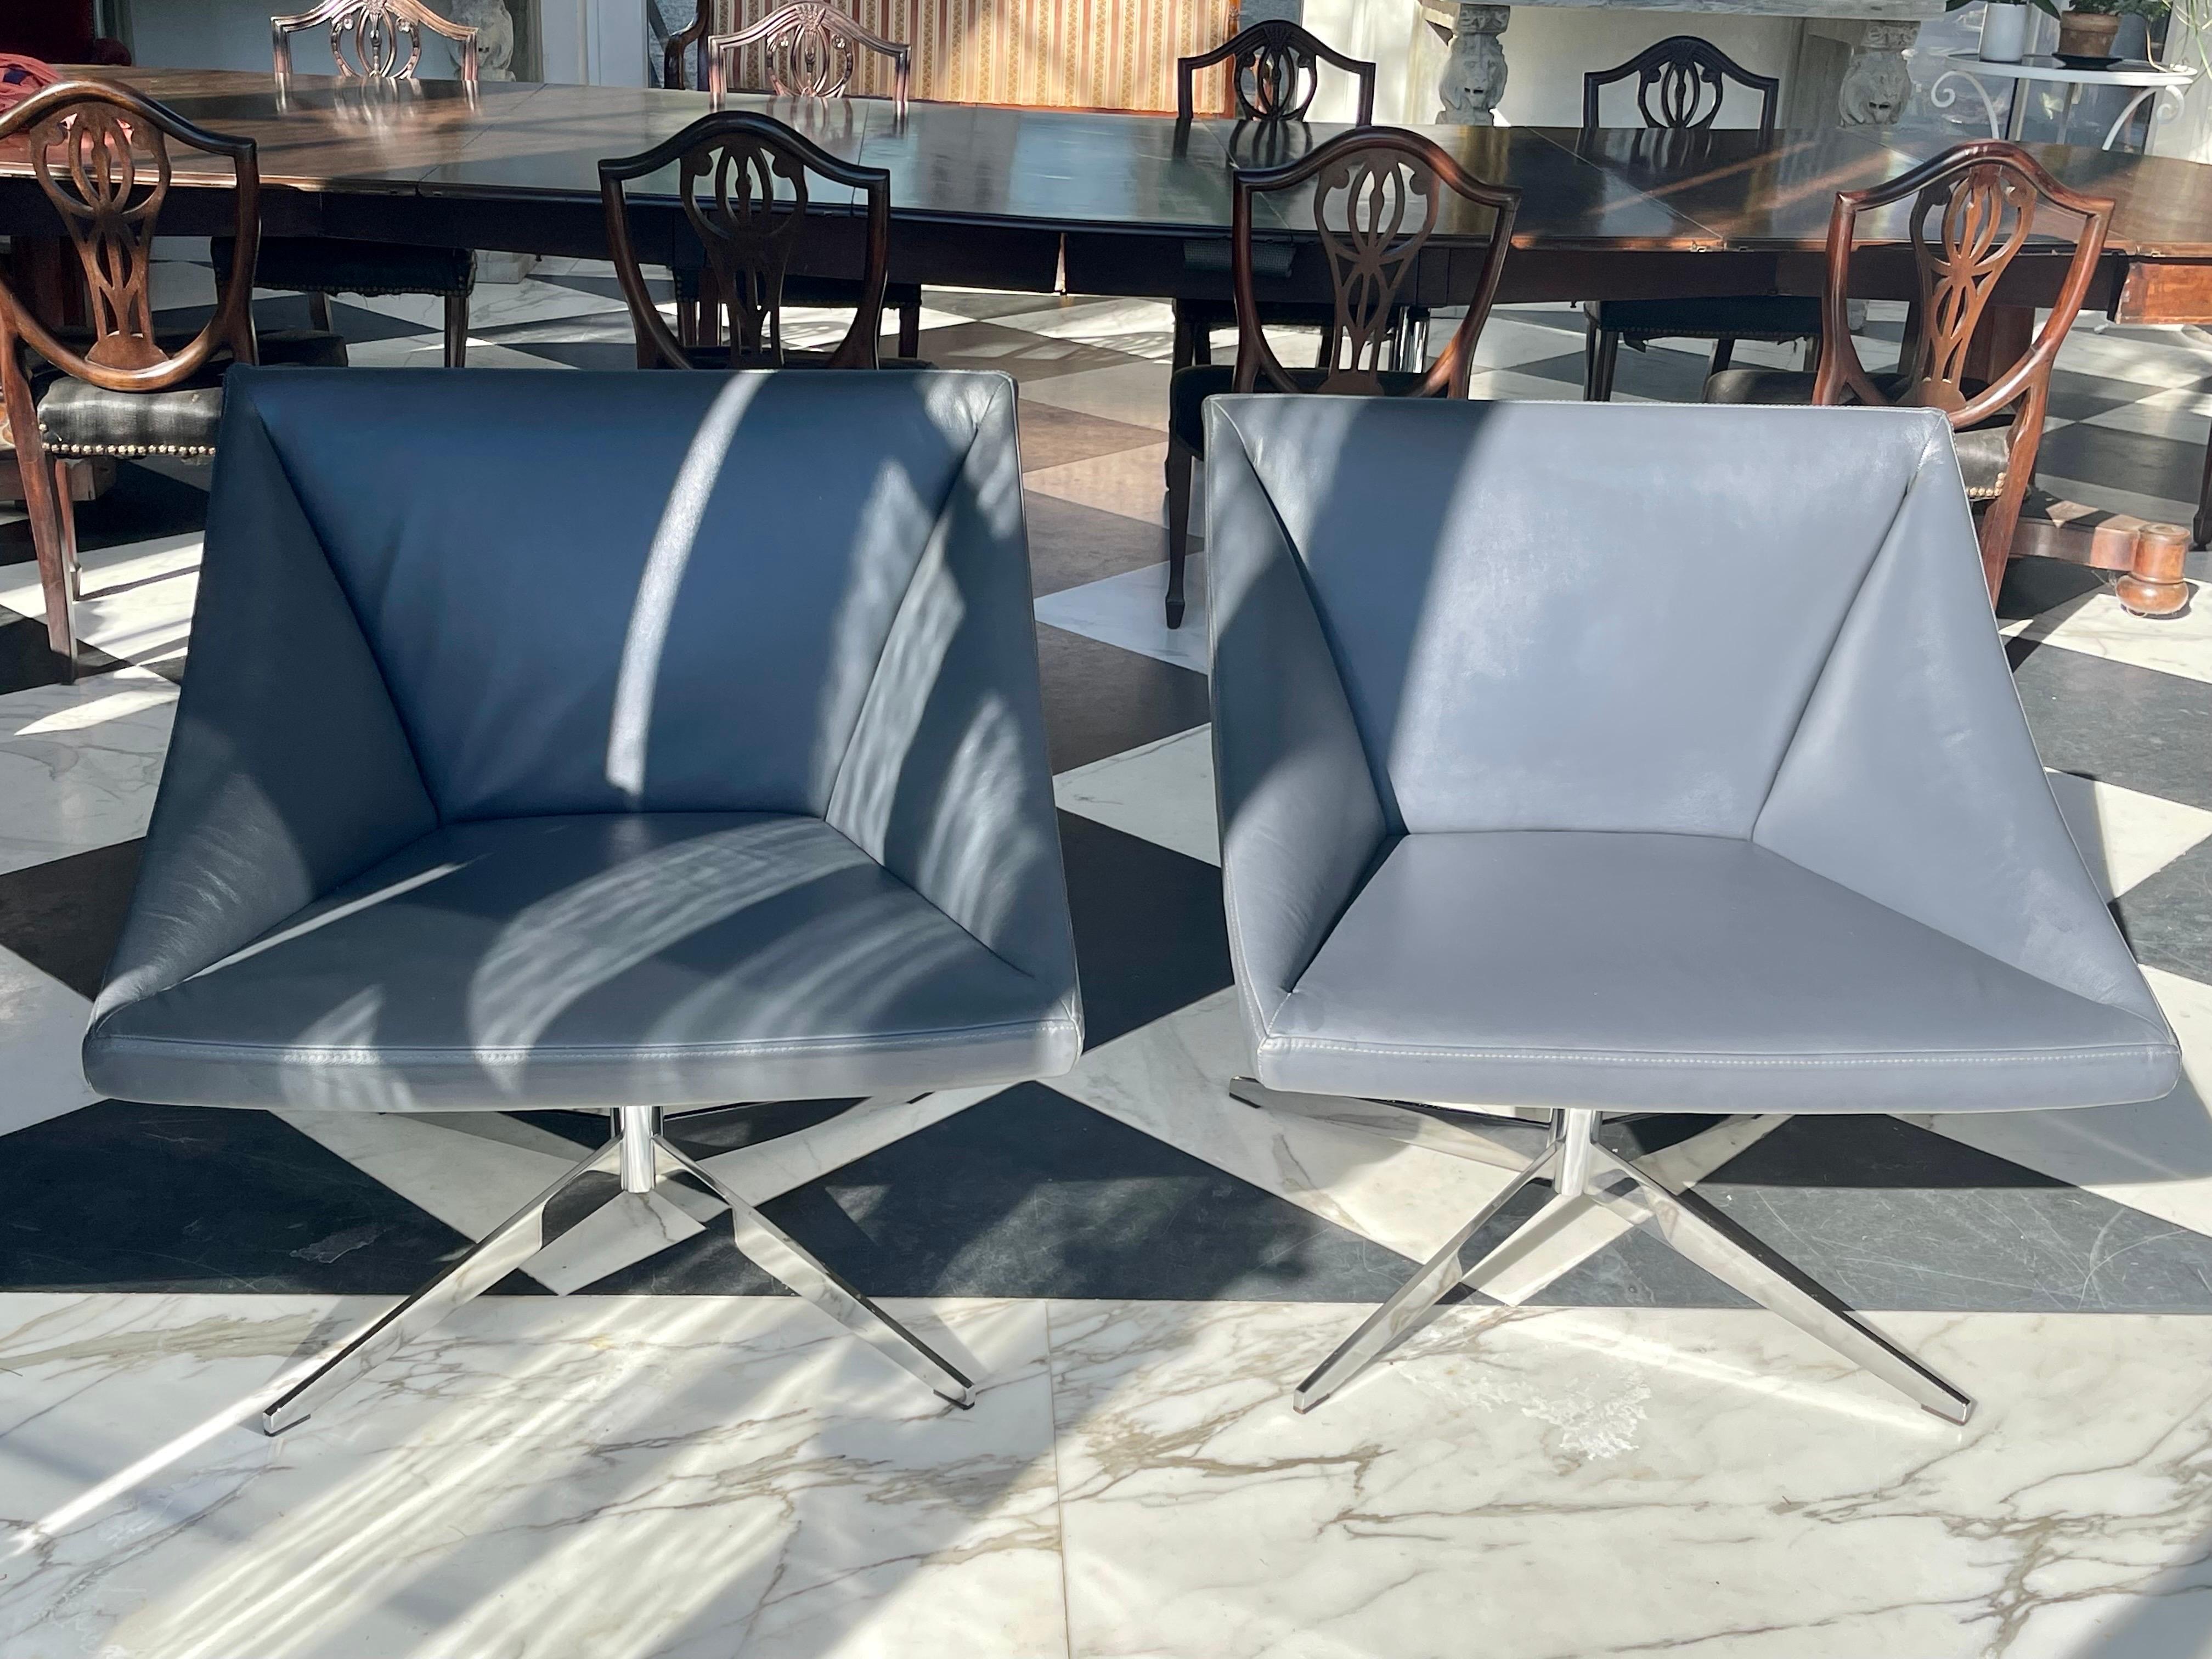 Paire de fauteuils pivotants de Davis Furniture, recouverts de cuir gris. Avec une base chromée en forme d'étoile. 
La coque extérieure est en plastique blanc. 
Davis Furniture Industries est une entreprise familiale américaine.